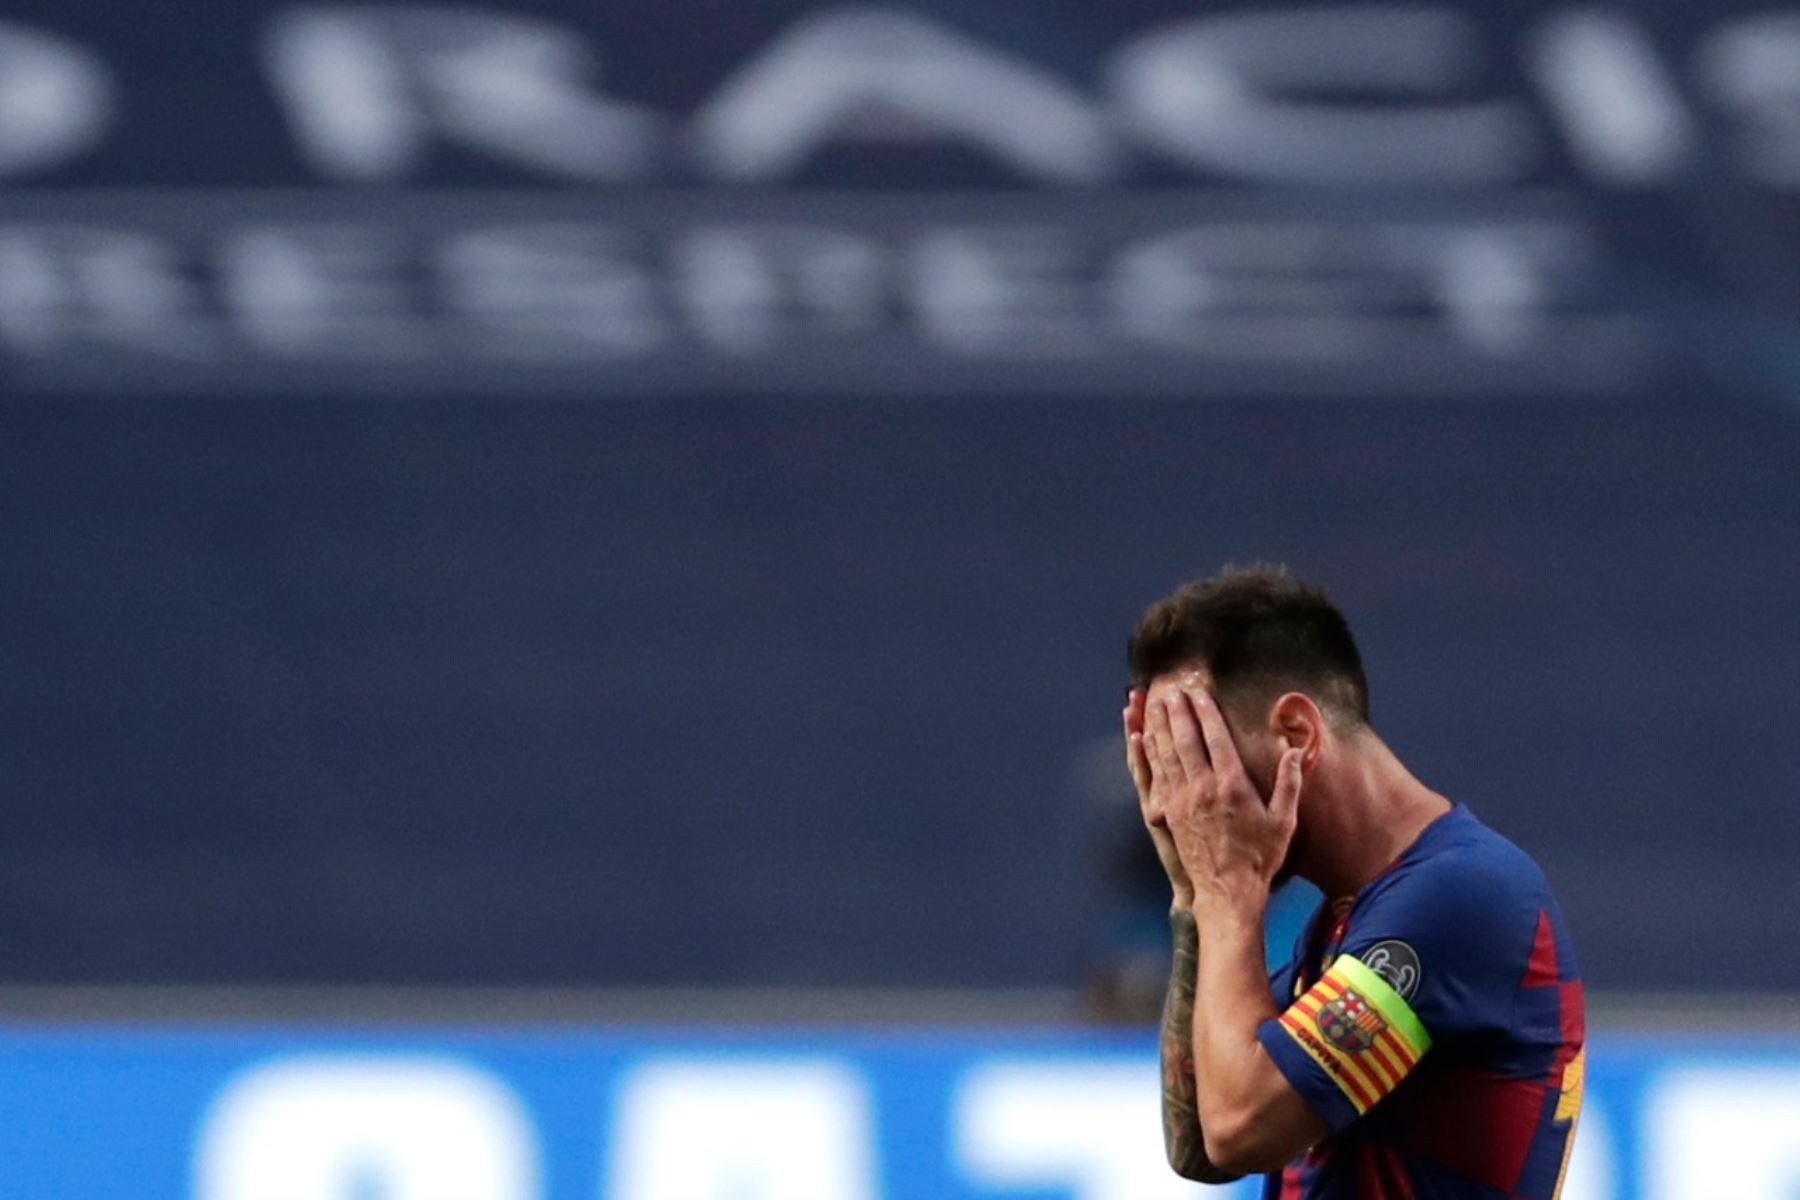 El delantero argentino del Barcelona Lionel Messi se muestra decepcionado de la derrota histórica  ante el Bayern de Múnich durante el partido de fútbol de cuartos de final de la Liga de Campeones de la UEFA entre el Barcelona y el Bayern de Múnich en el estadio Luz de Lisboa.
Manu Fernandez / PISCINA / AFP